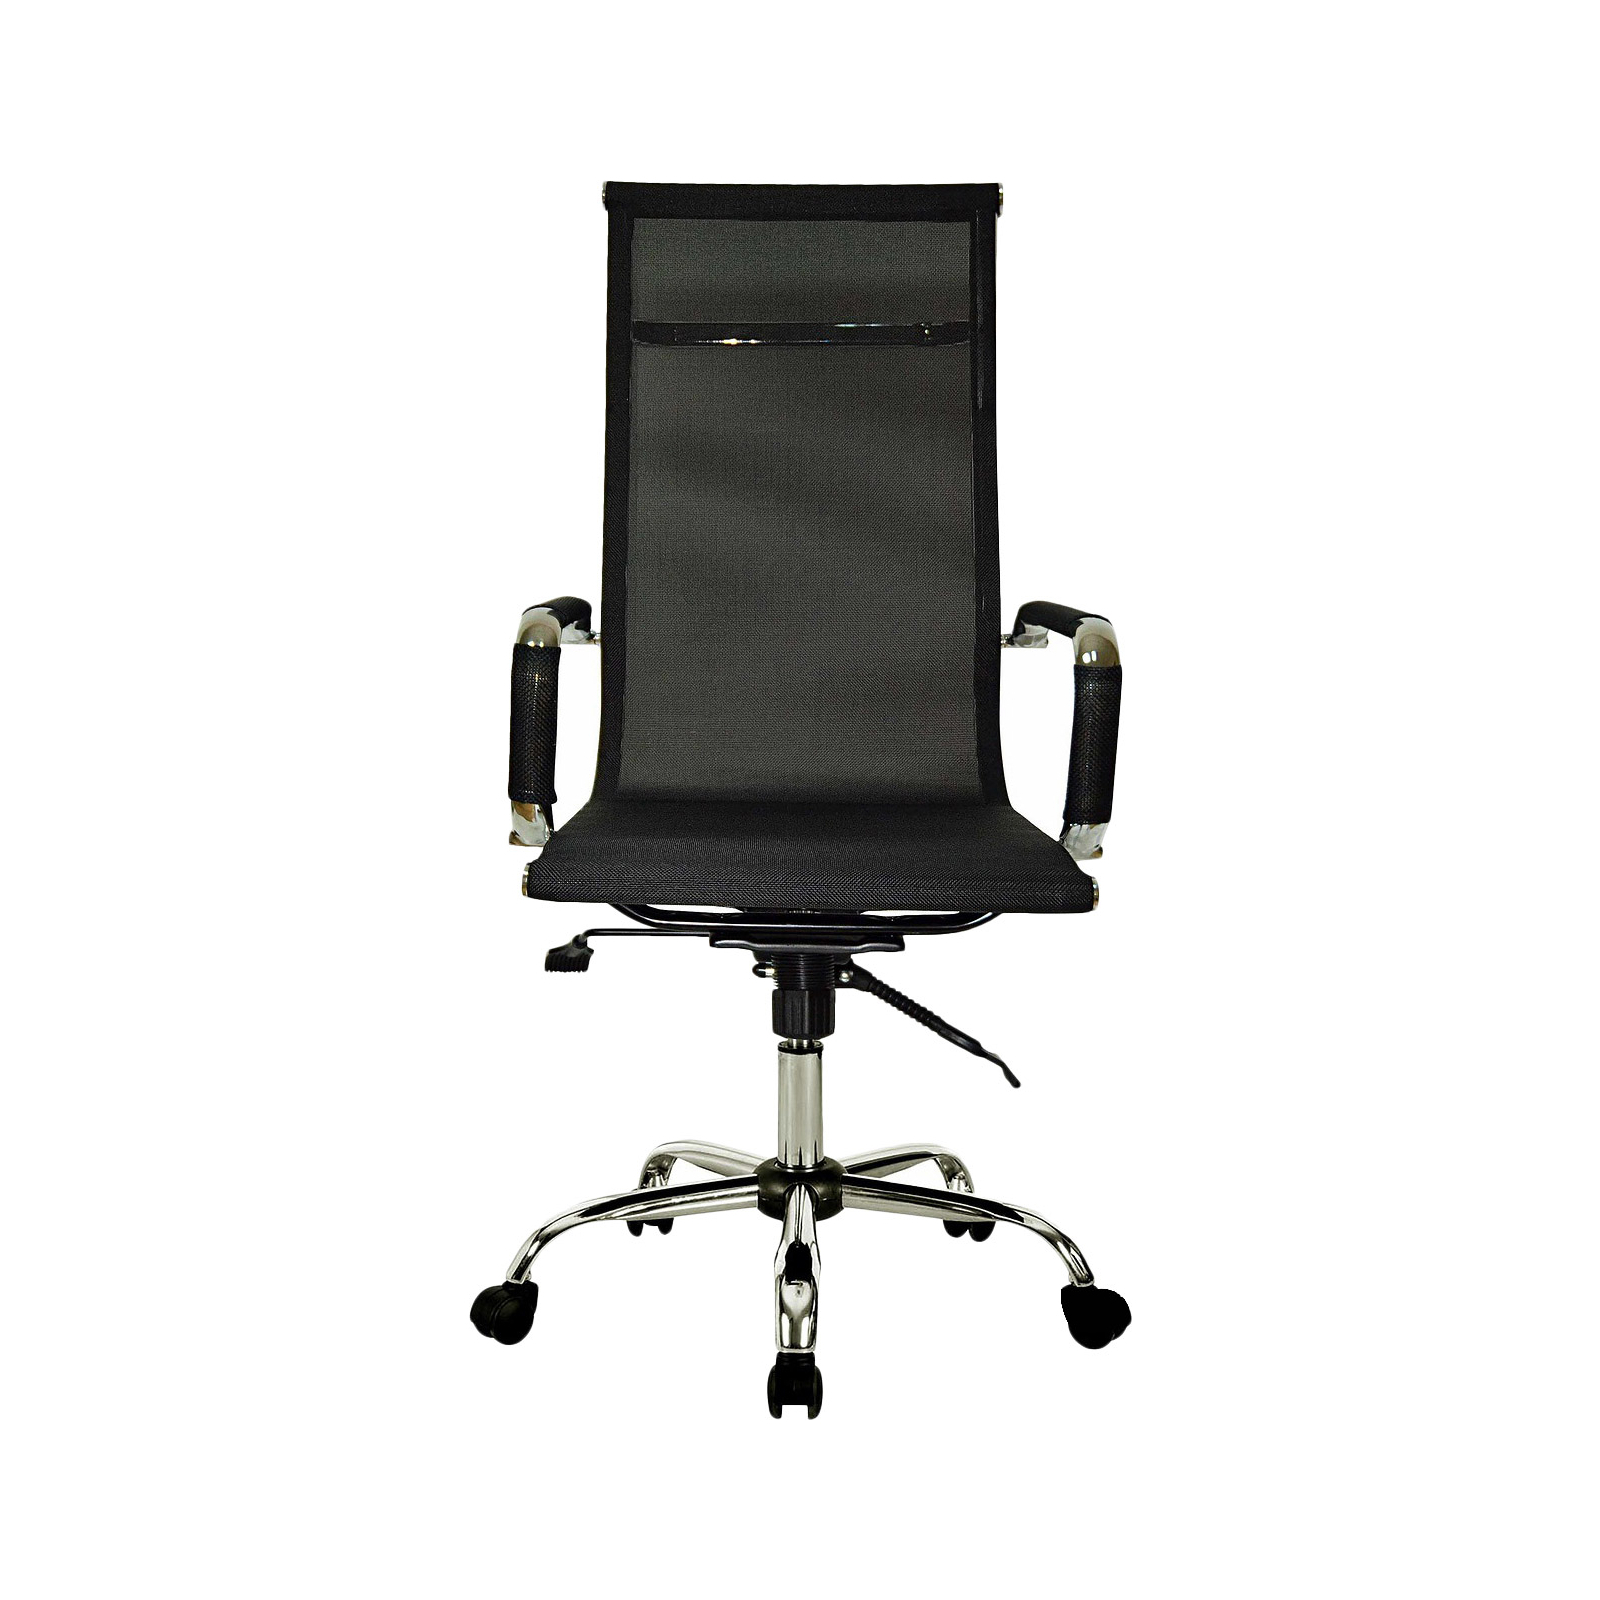 Офисное кресло Примтекс плюс Oscar Lite DM-01 черный (Oscar Lite DM-01) изображение 2